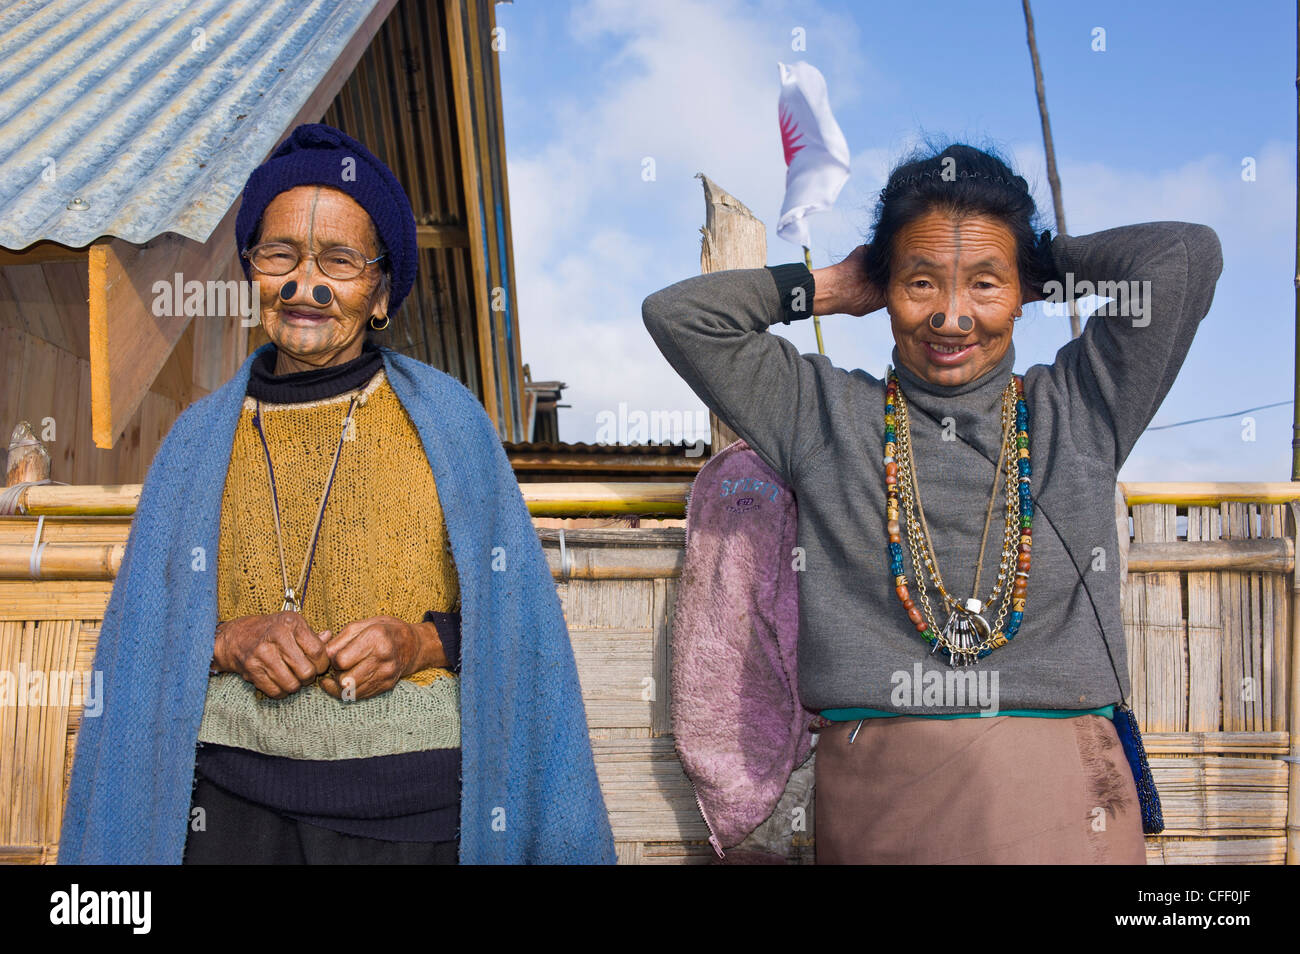 Les vieilles femmes de la tribu Apatani célèbre pour les pièces de bois dans leur nez pour les rendre laids, Ziro, de l'Arunachal Pradesh, Inde Banque D'Images